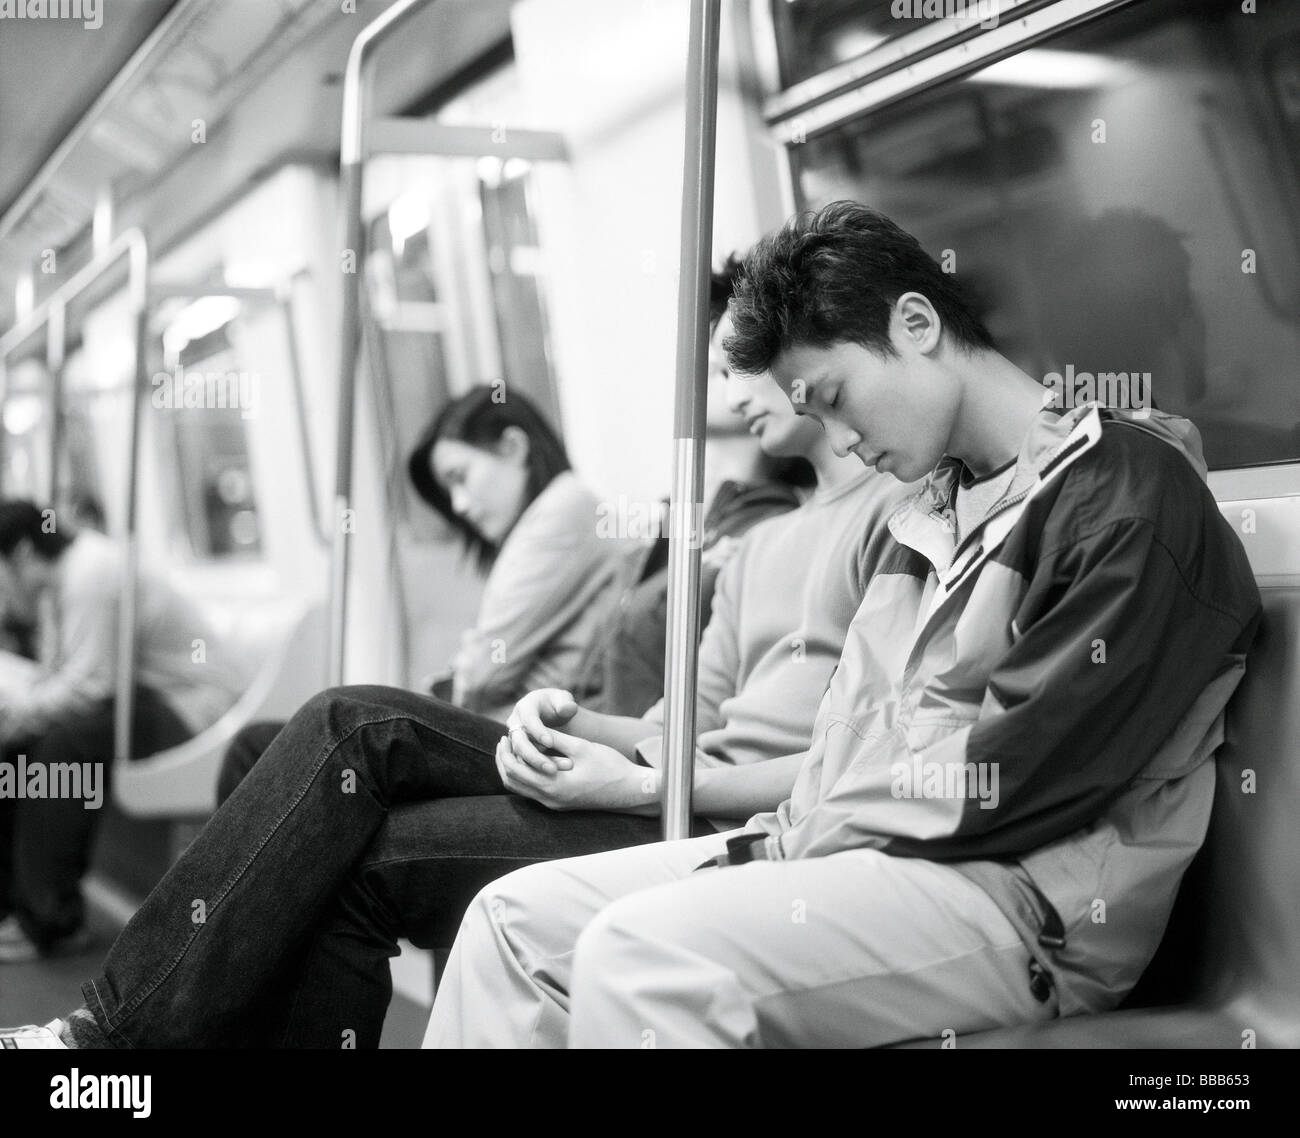 Les jeunes adultes dormant sur le train. Banque D'Images